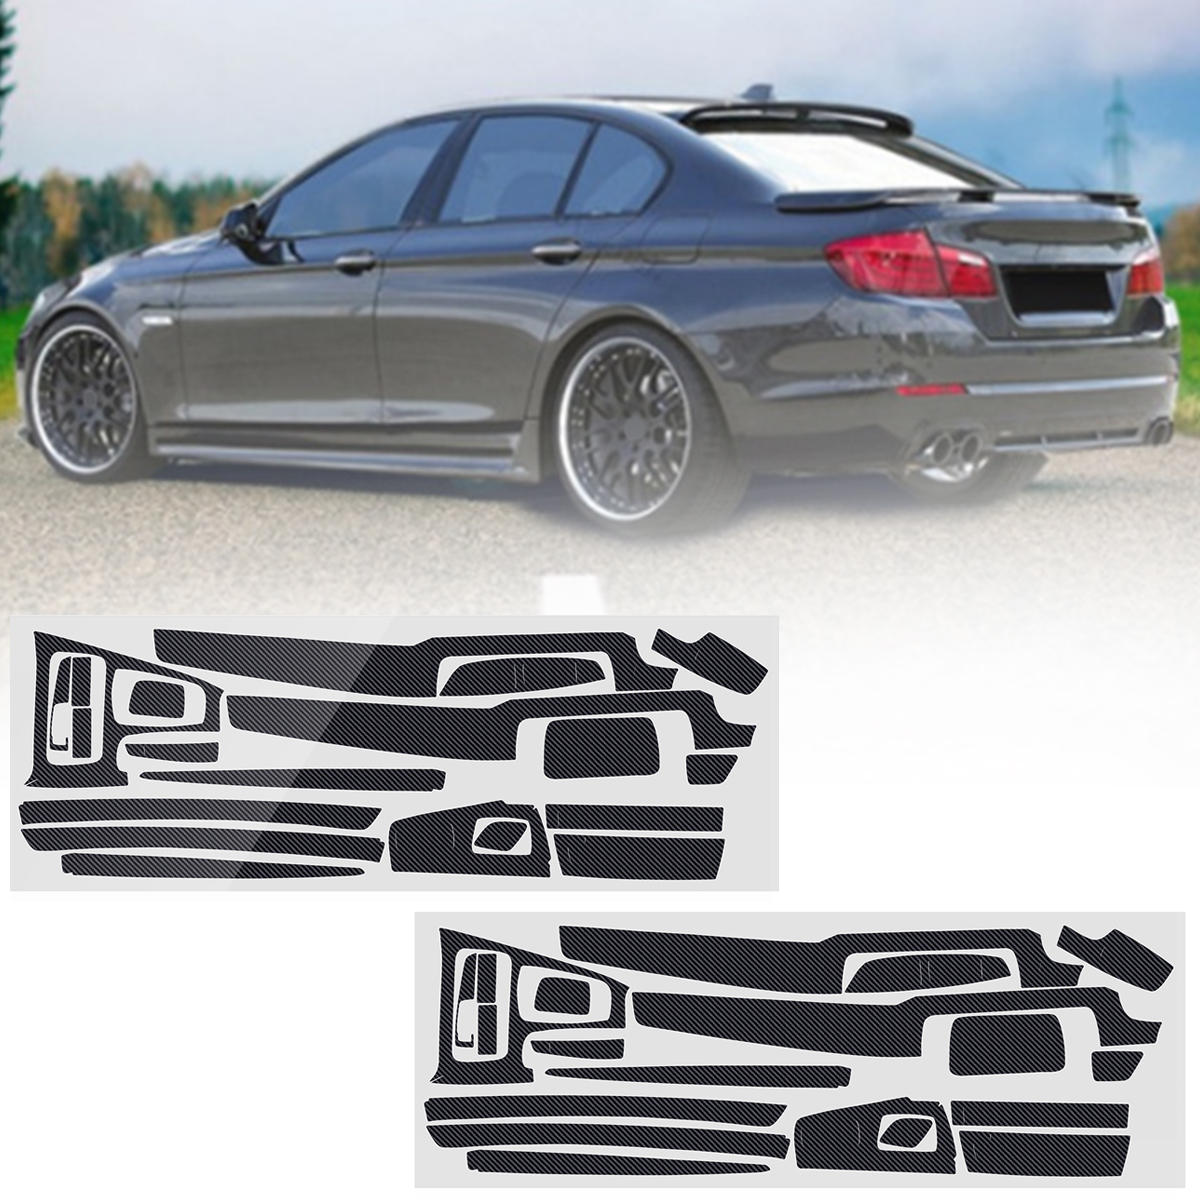 Koolstofvezel patroon auto-interieur Dashboard Sticker Wrap decoratie voor BMW 5-serie F10 F18 2011-